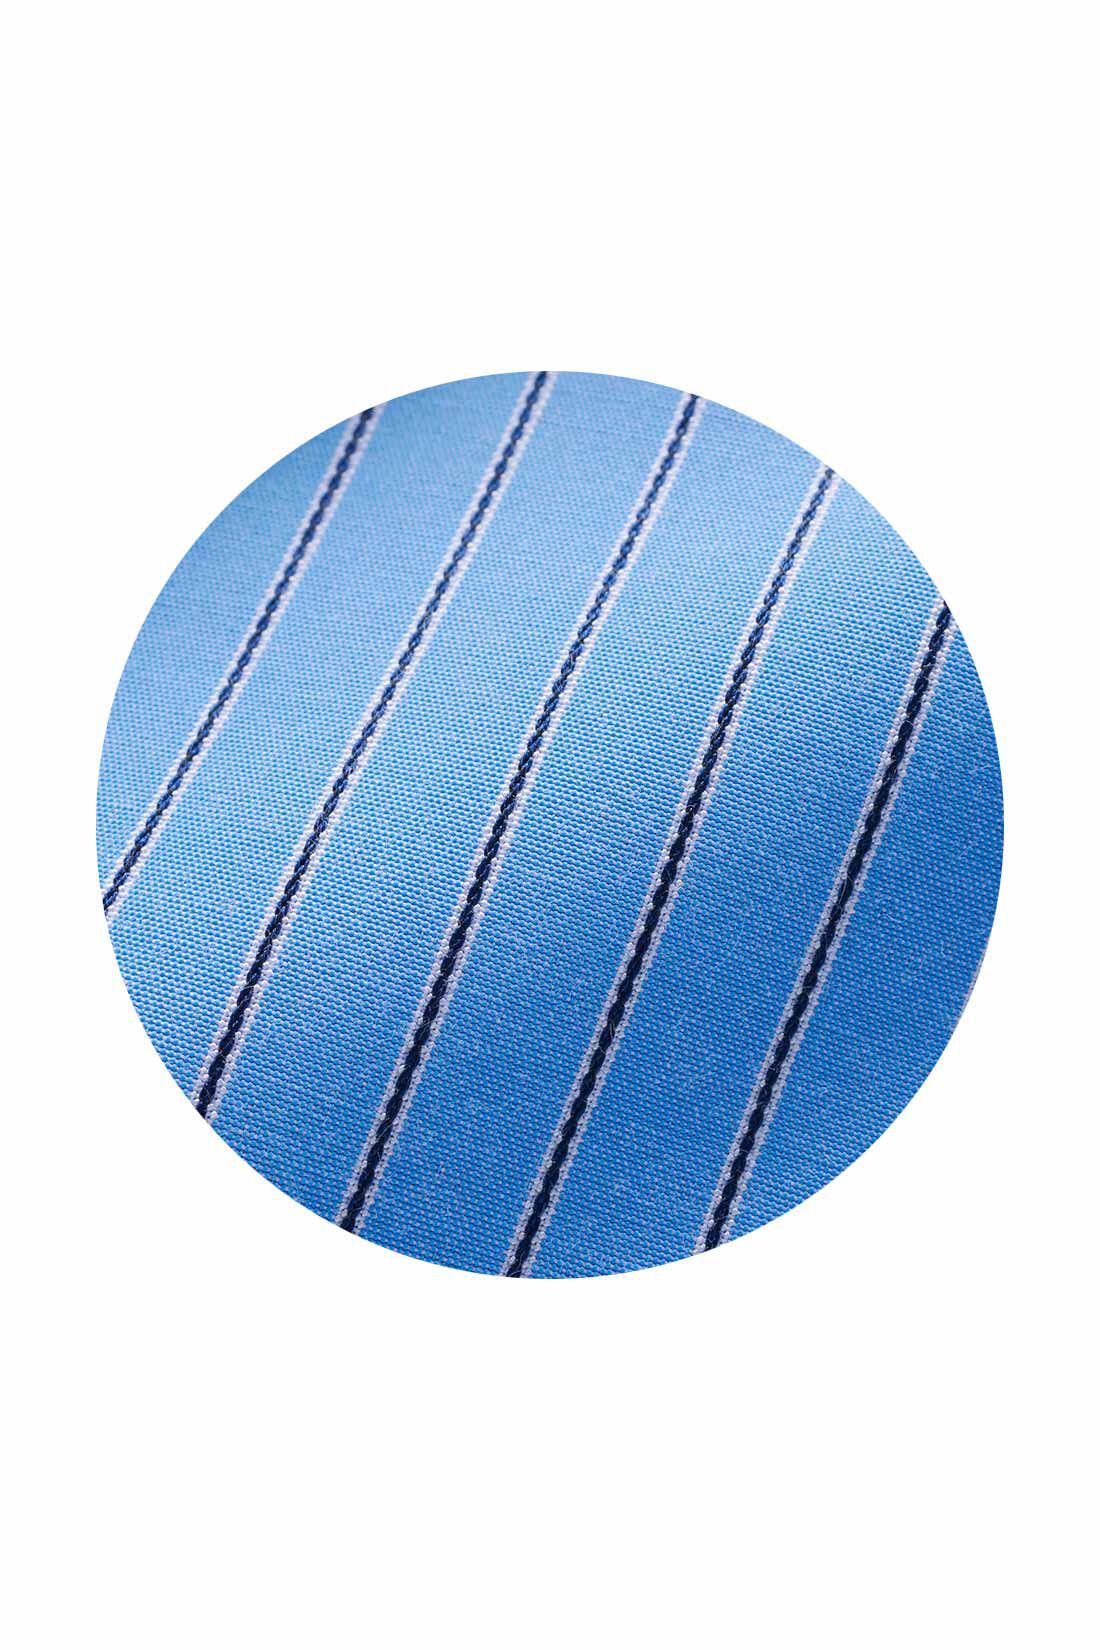 シロップ．|シロップ． リブがポイント　さらり布はくのさわやかストライプワンピース〈ソーダブルー〉|織りで柄を表現したソーダ味のアイスみたいなブルーのストライプ。